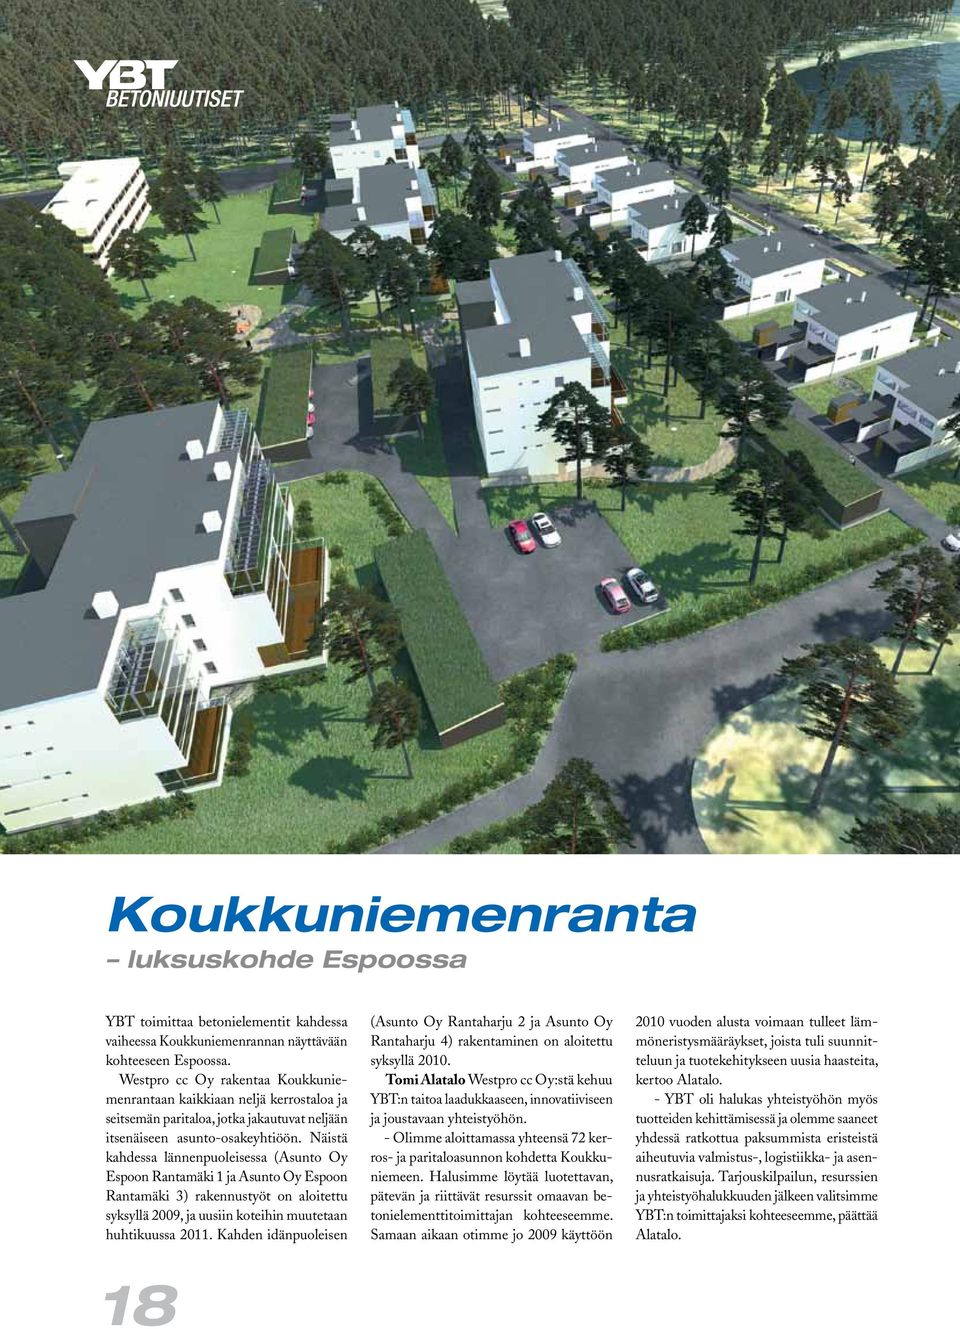 Näistä kahdessa lännenpuoleisessa (Asunto Oy Espoon Rantamäki 1 ja Asunto Oy Espoon Rantamäki 3) rakennustyöt on aloitettu syksyllä 2009, ja uusiin koteihin muutetaan huhtikuussa 2011.